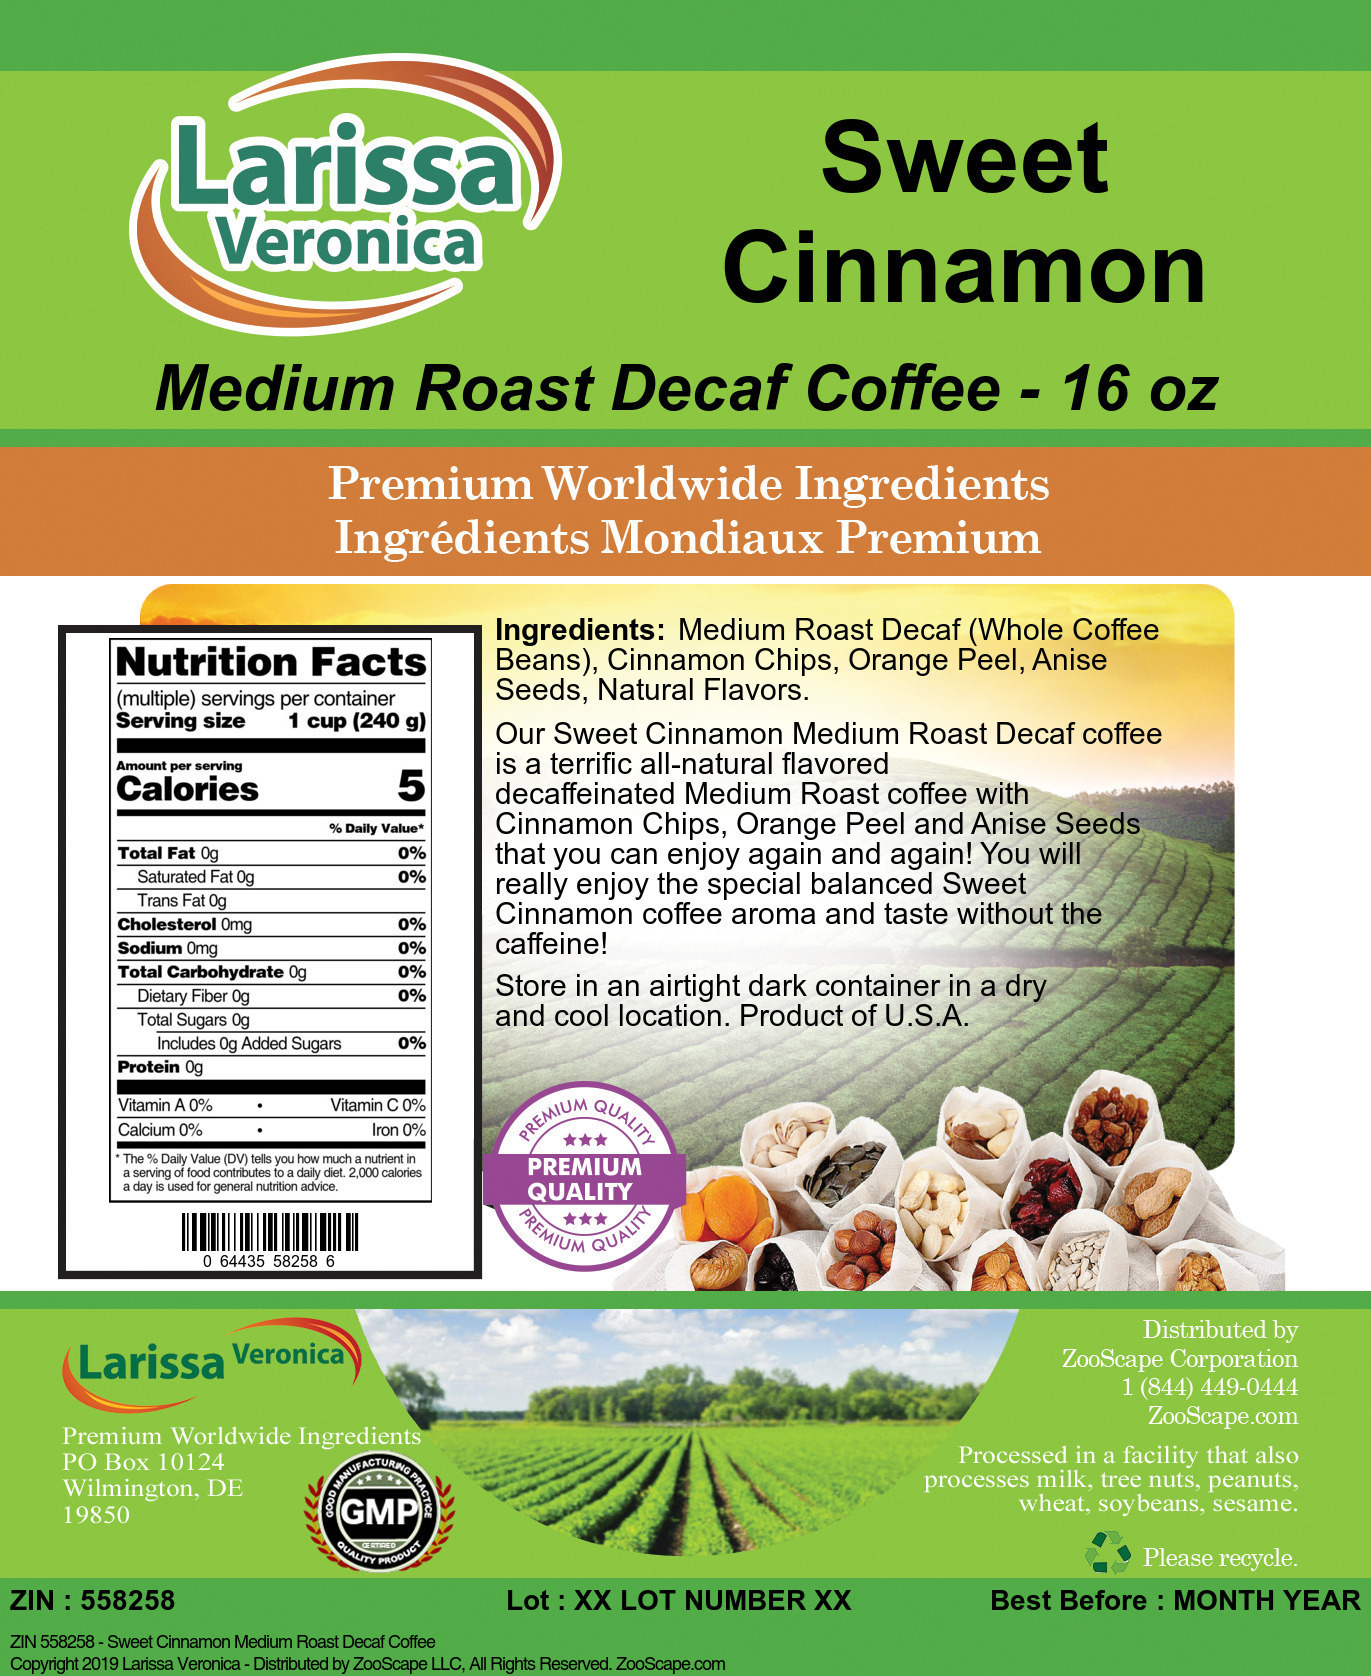 Sweet Cinnamon Medium Roast Decaf Coffee - Label